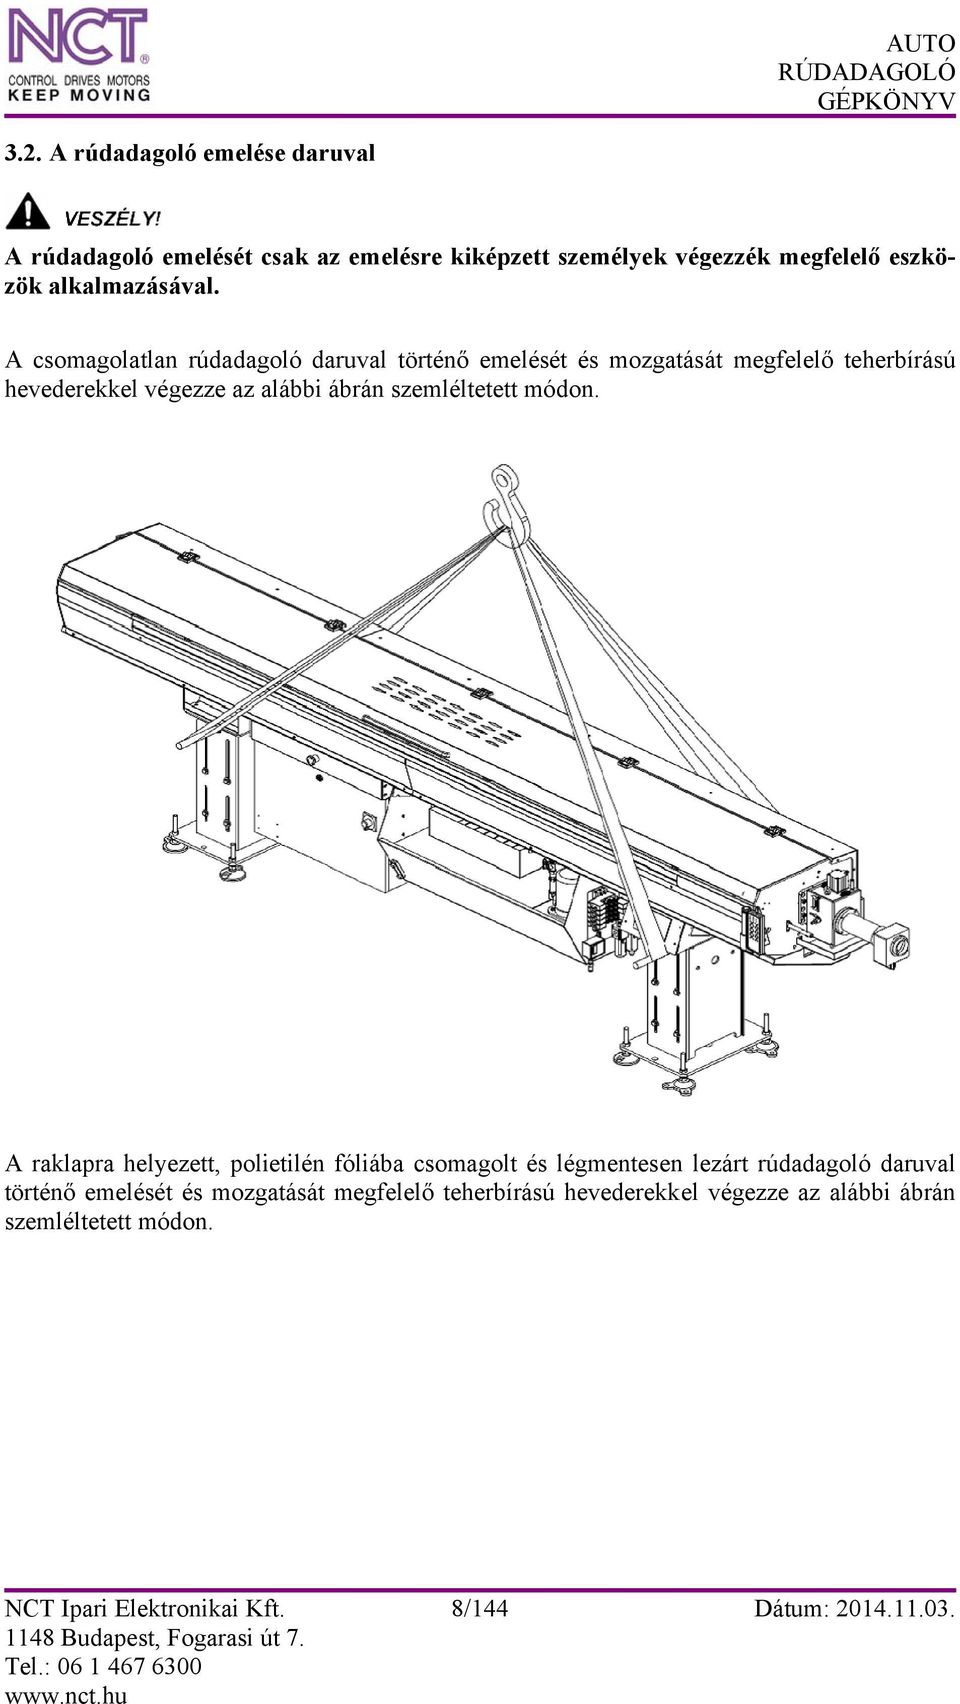 A csomagolatlan rúdadagoló daruval történő emelését és mozgatását megfelelő teherbírású hevederekkel végezze az alábbi ábrán